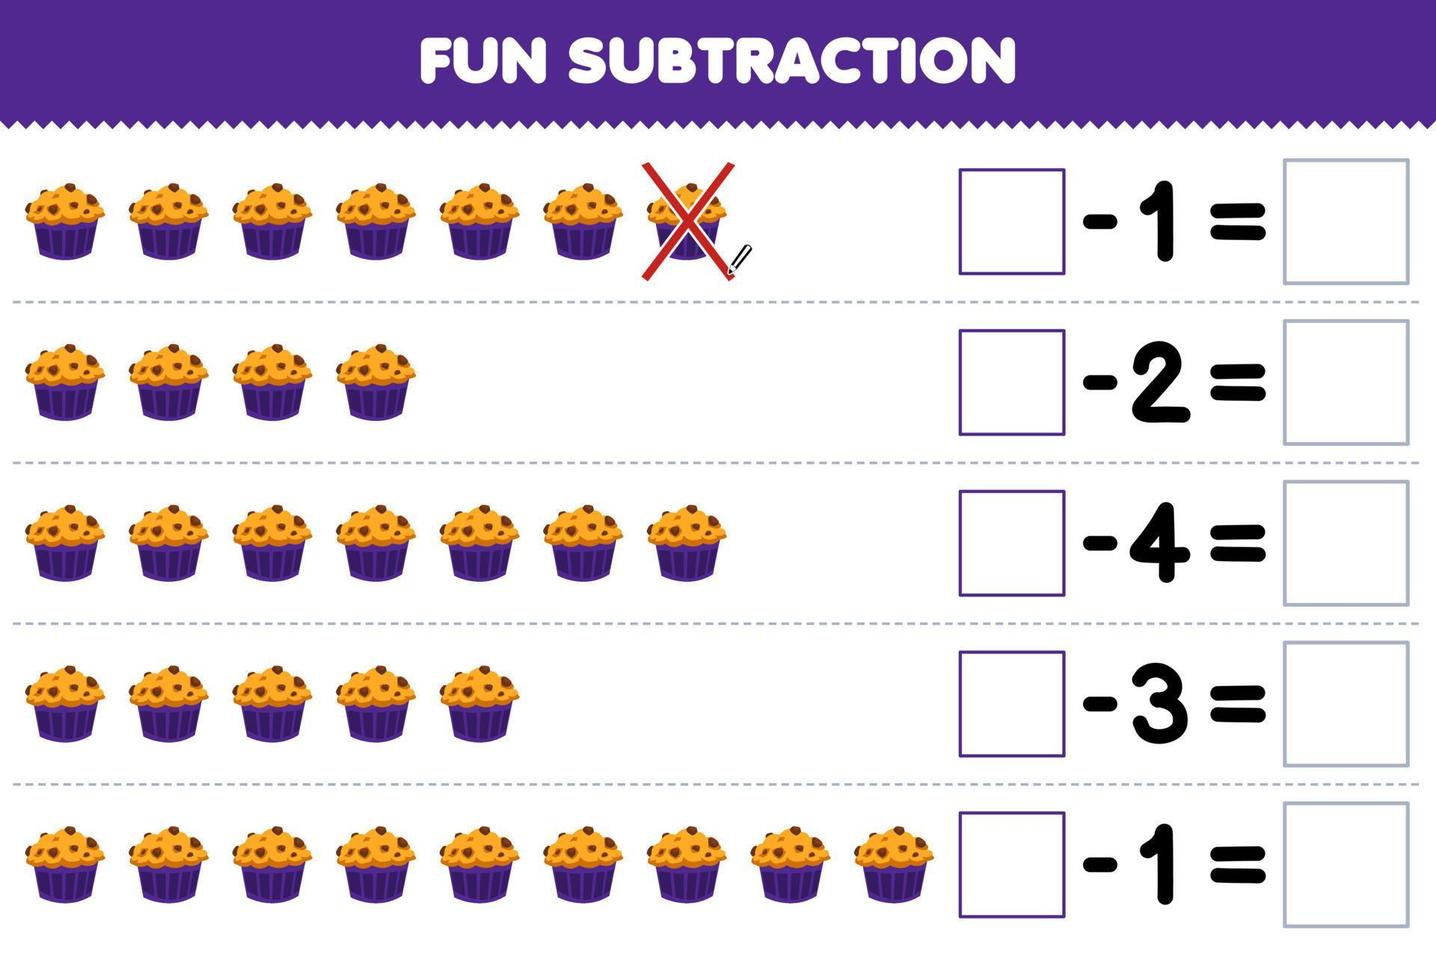 juego educativo para niños diversión resta contando muffin de dibujos animados en cada fila y eliminándolo hoja de trabajo de alimentos imprimible vector